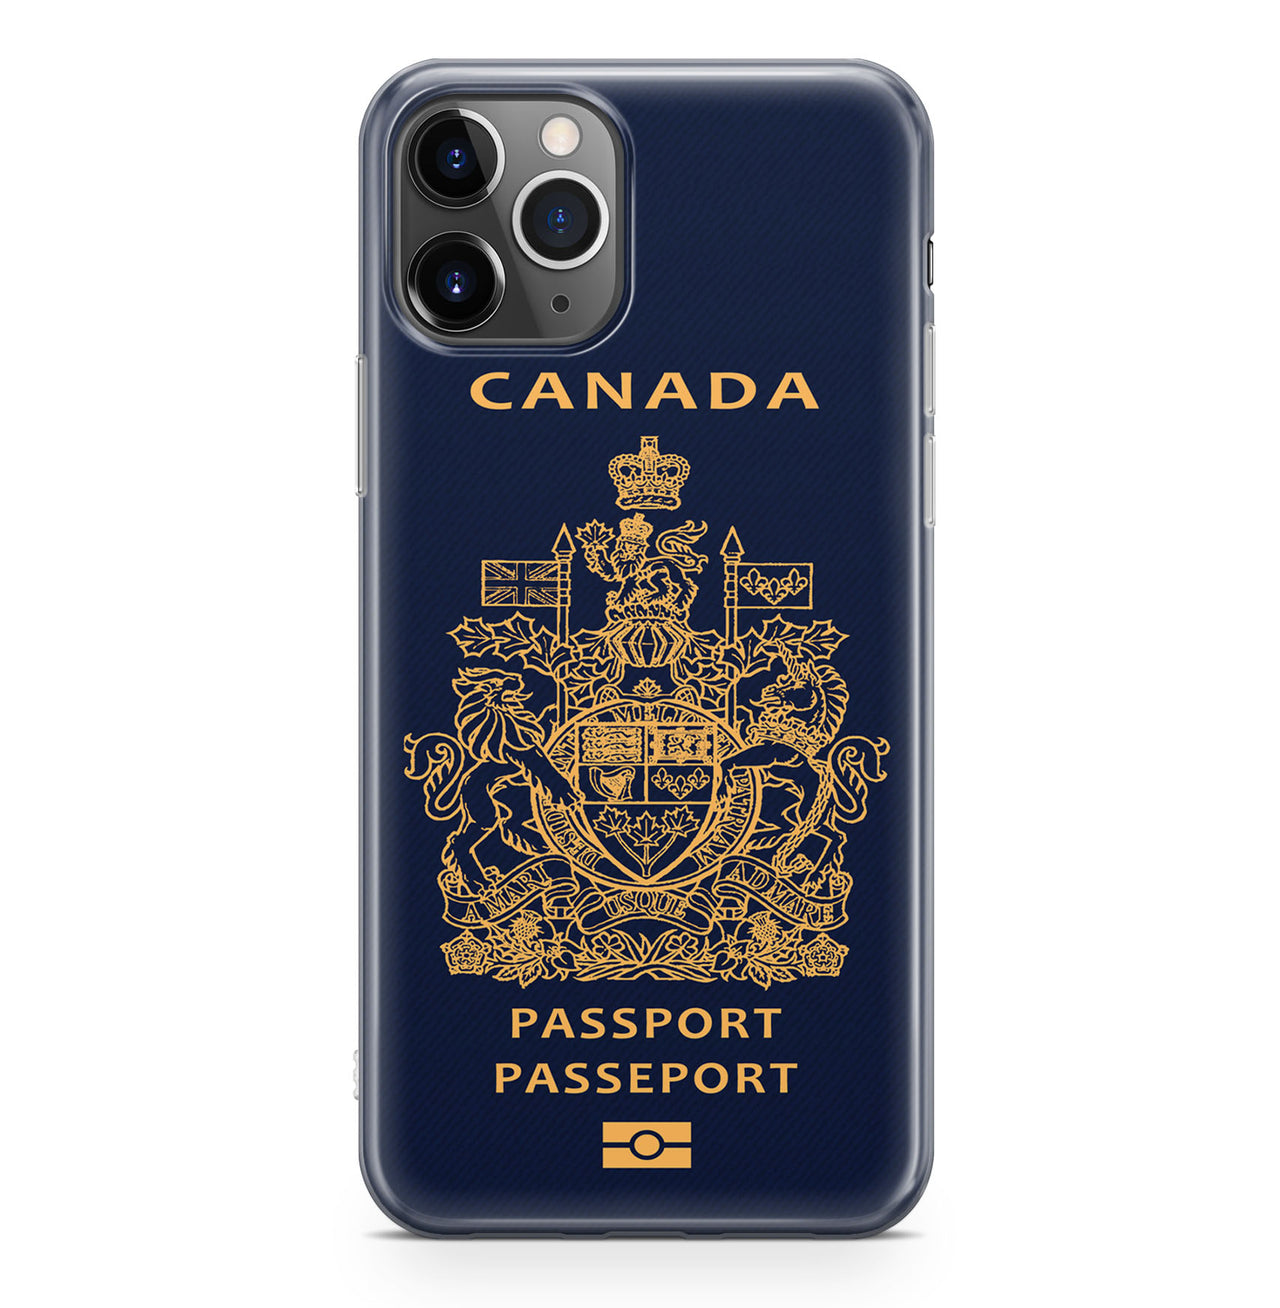 Canada Passport Designed iPhone Cases